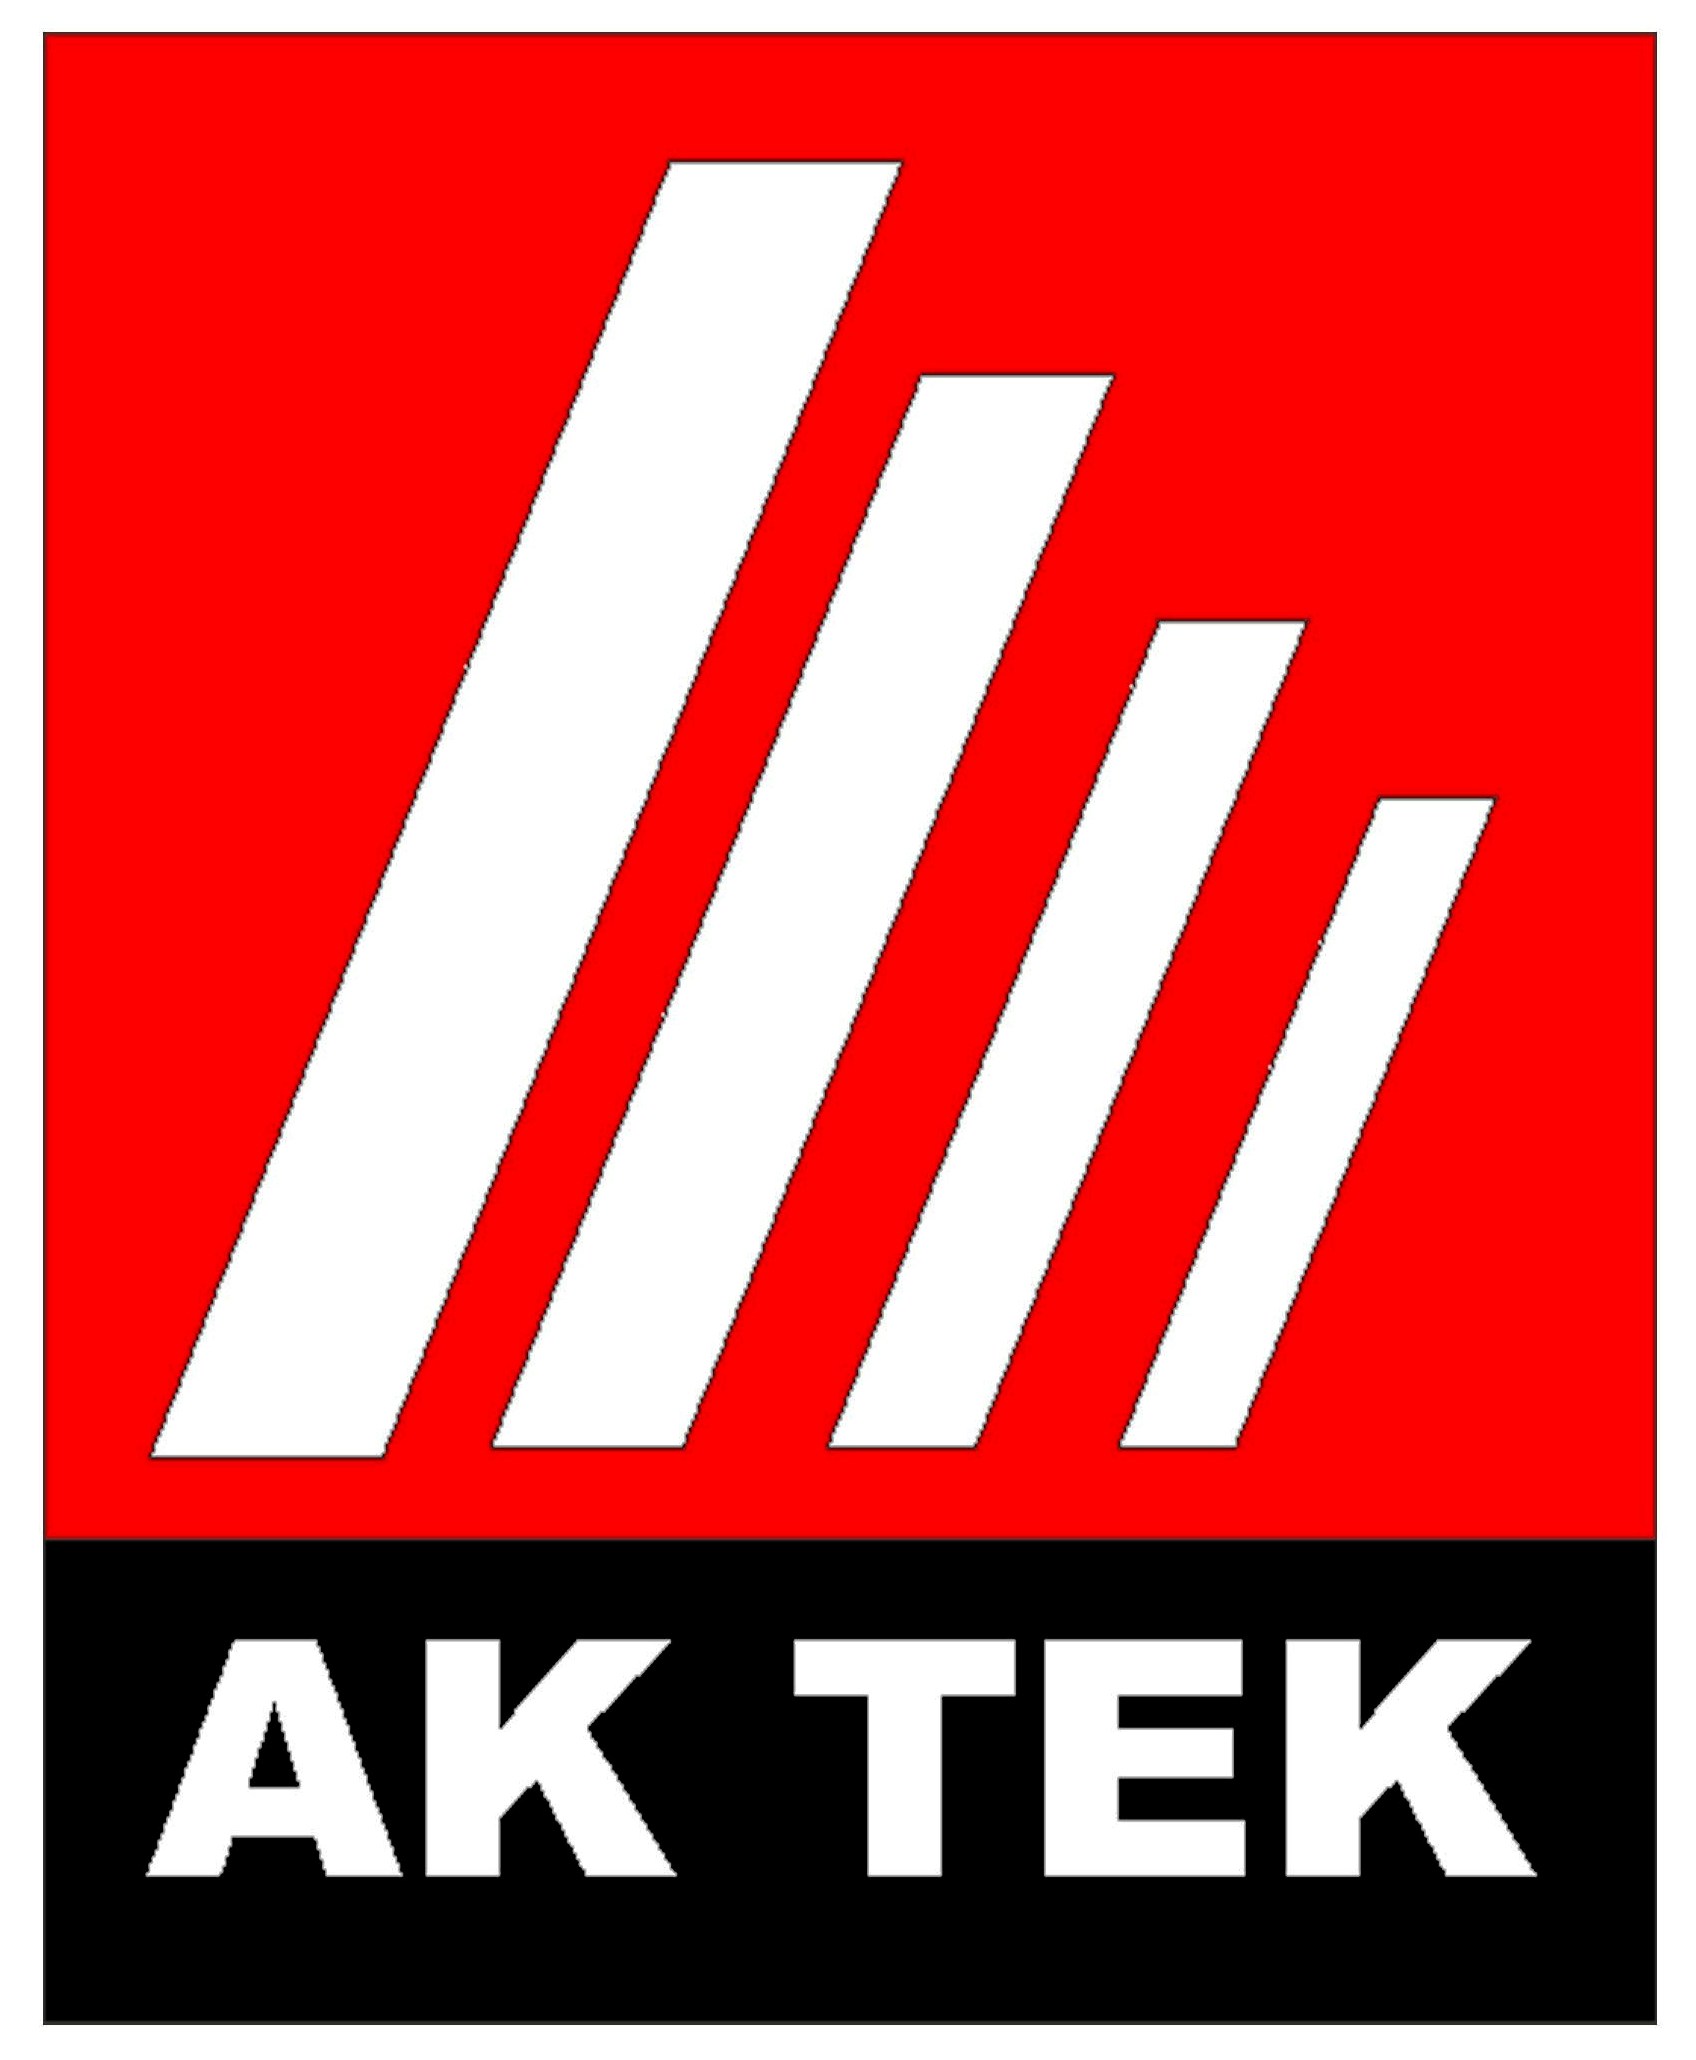 AK TEK